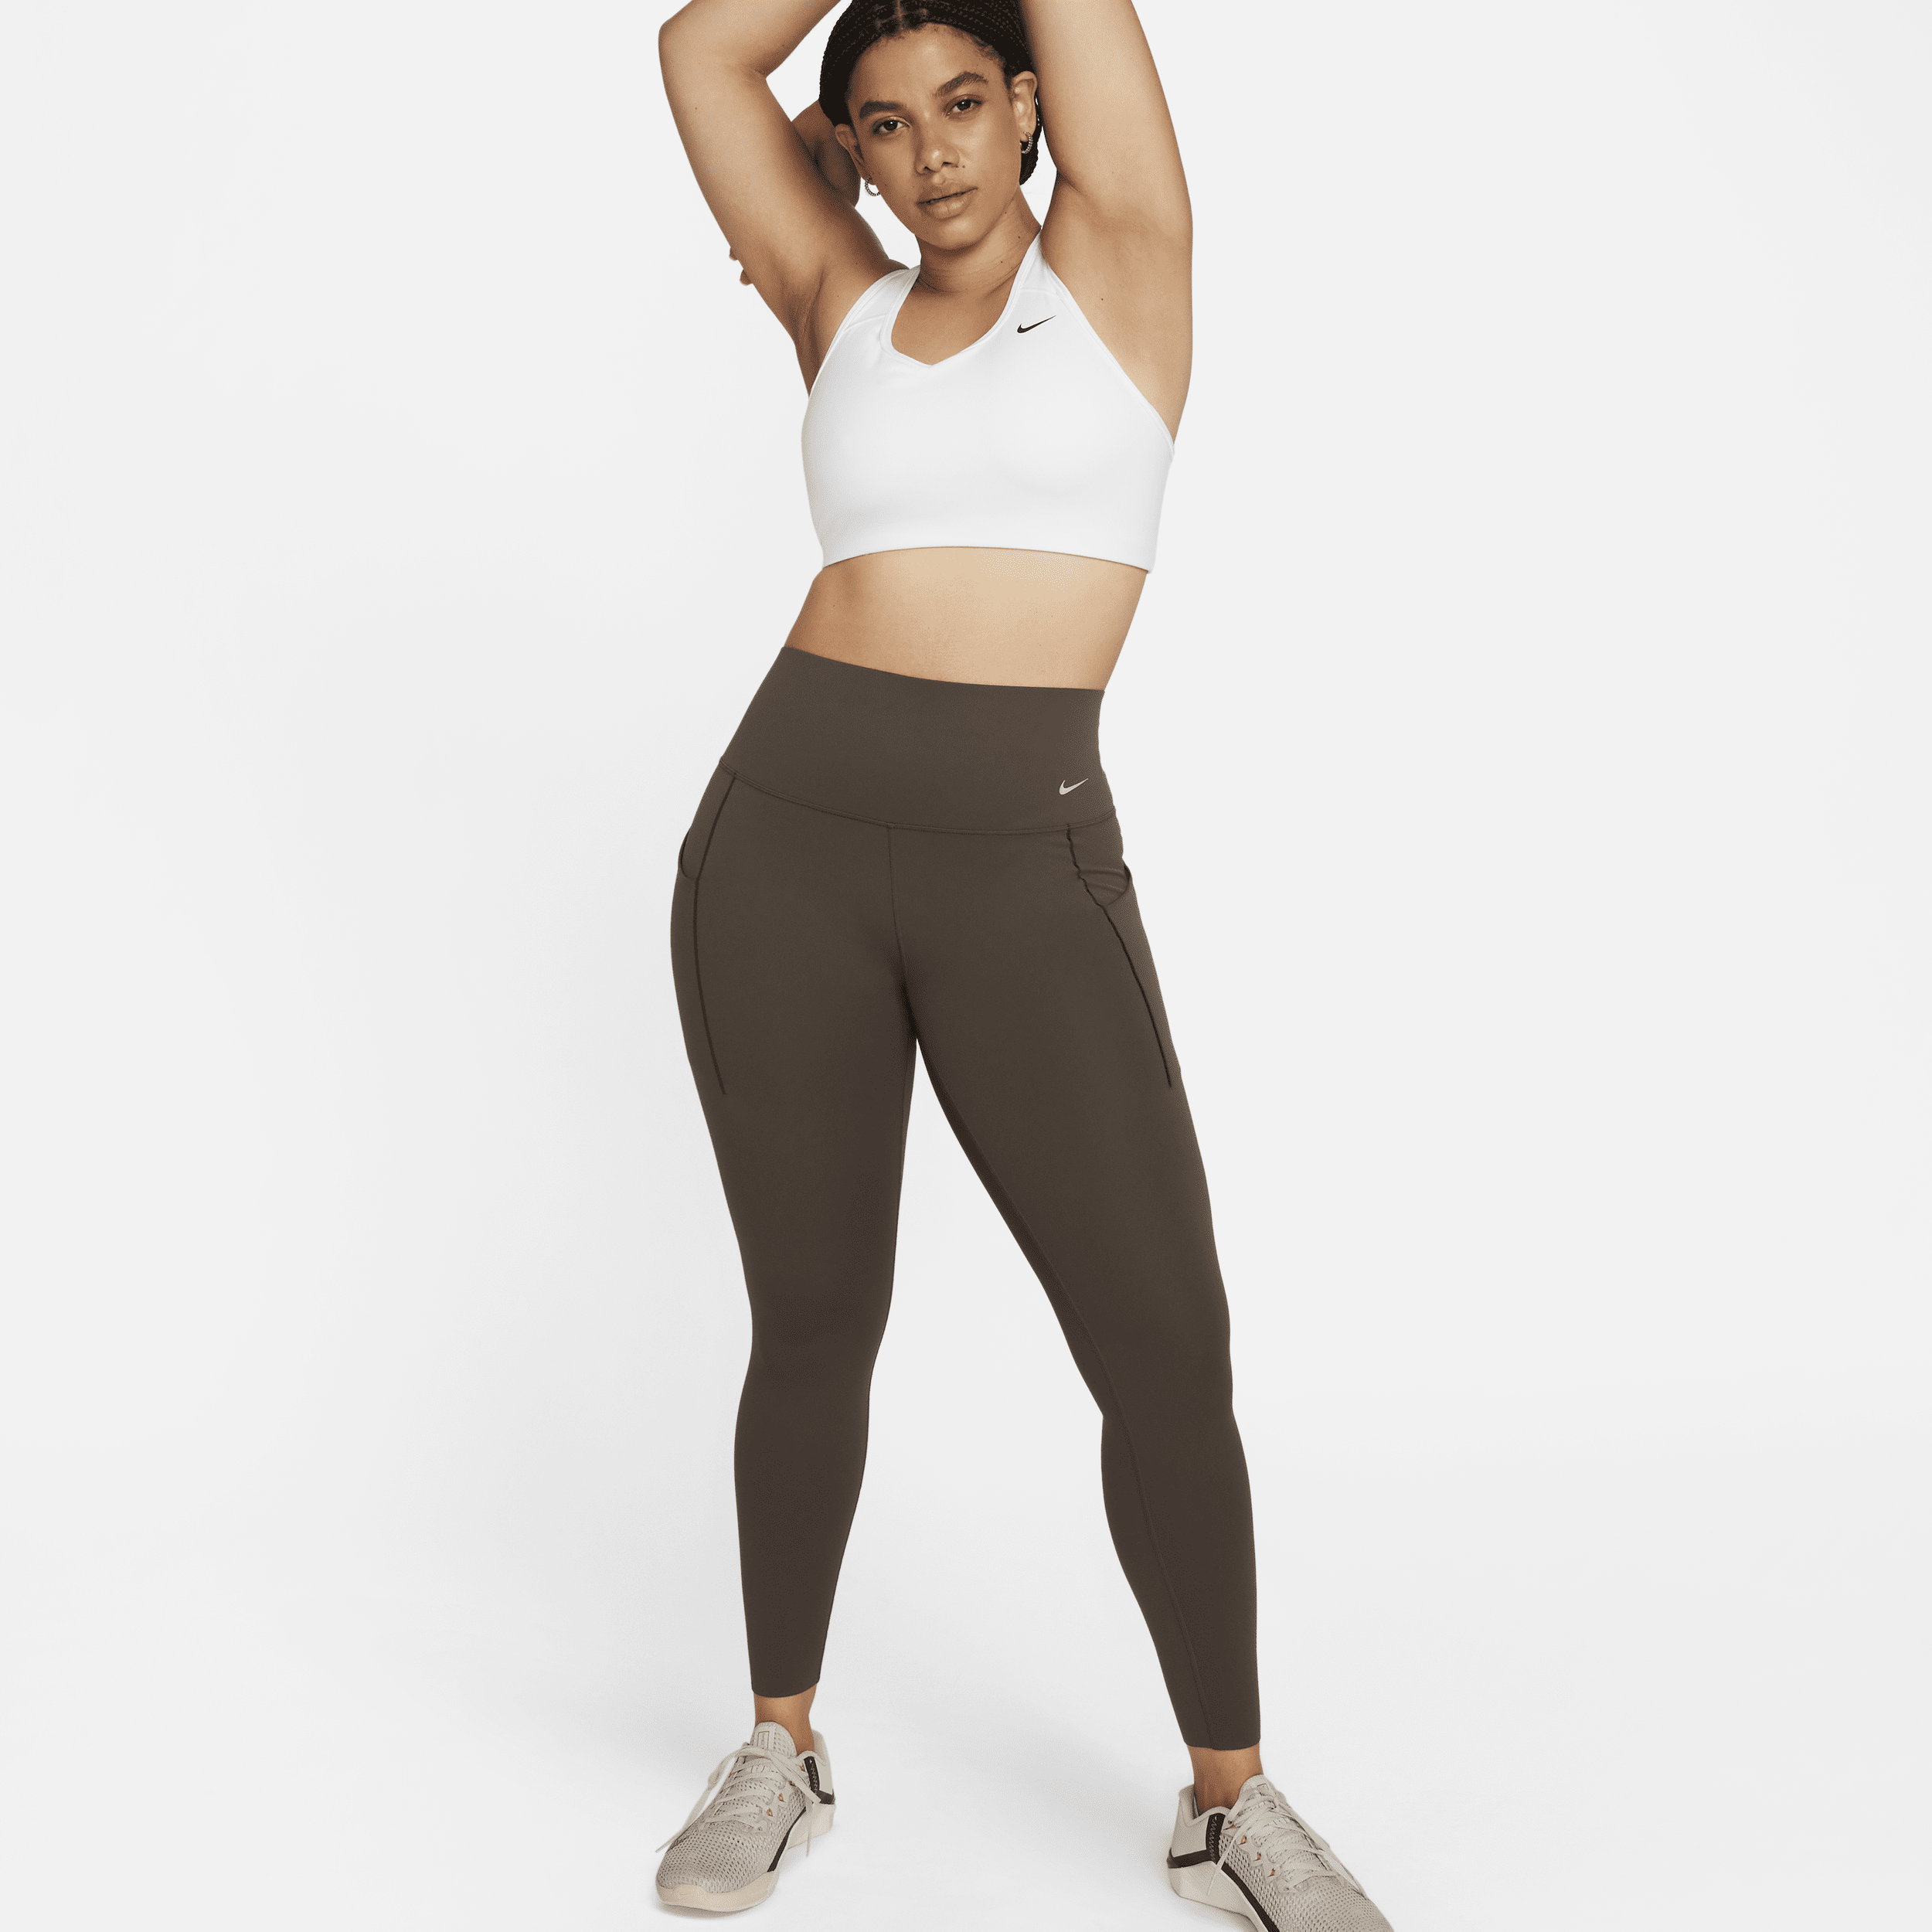 Nike Universa-leggings i fuld længde med medium støtte, høj talje og lommer til kvinder - brun